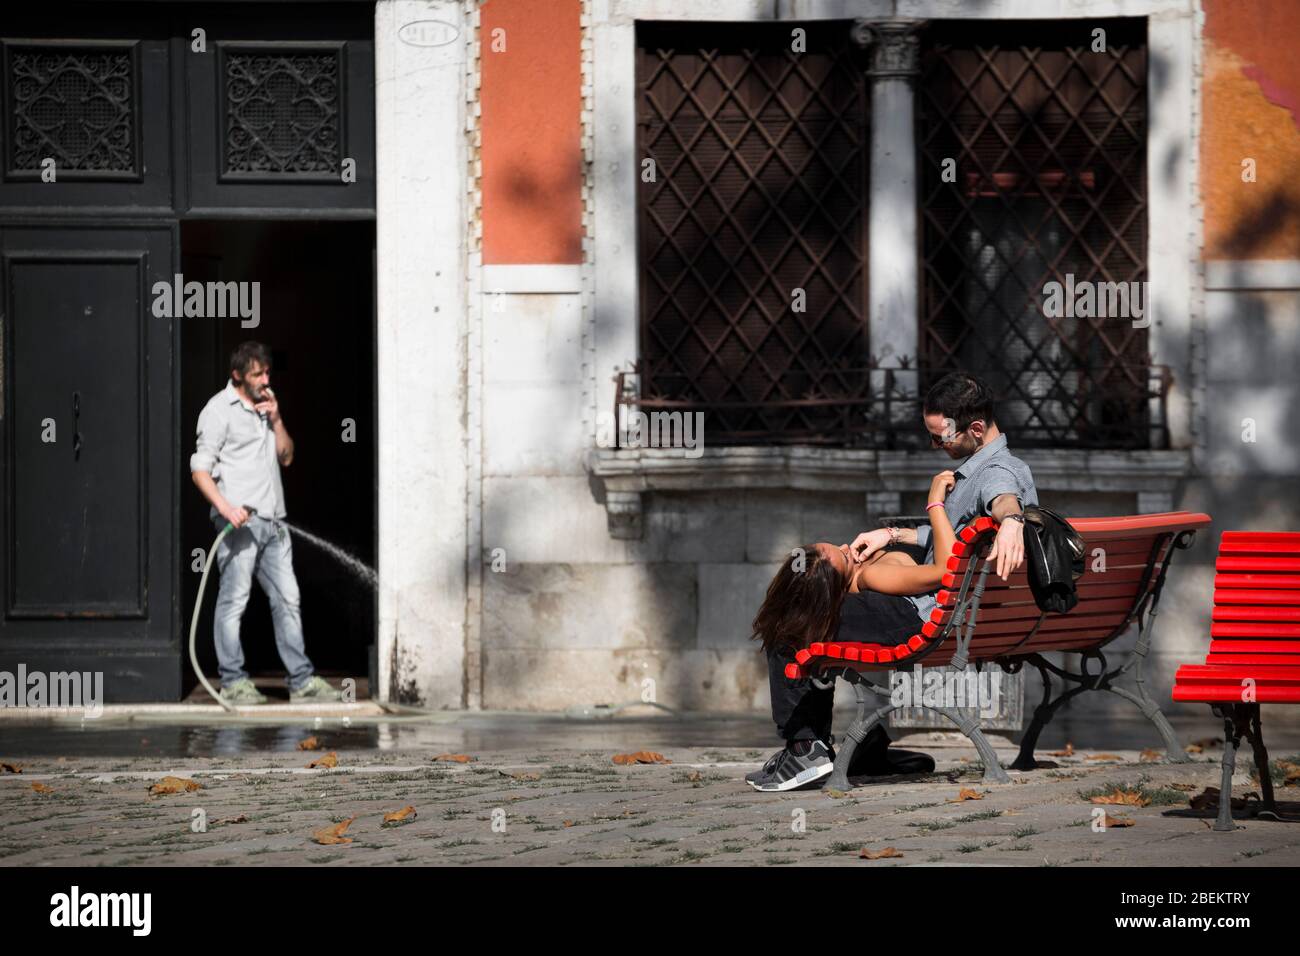 Amanti su una panchina rossa con un uomo che tiene un tubo guardando, Venezia, Italia Foto Stock